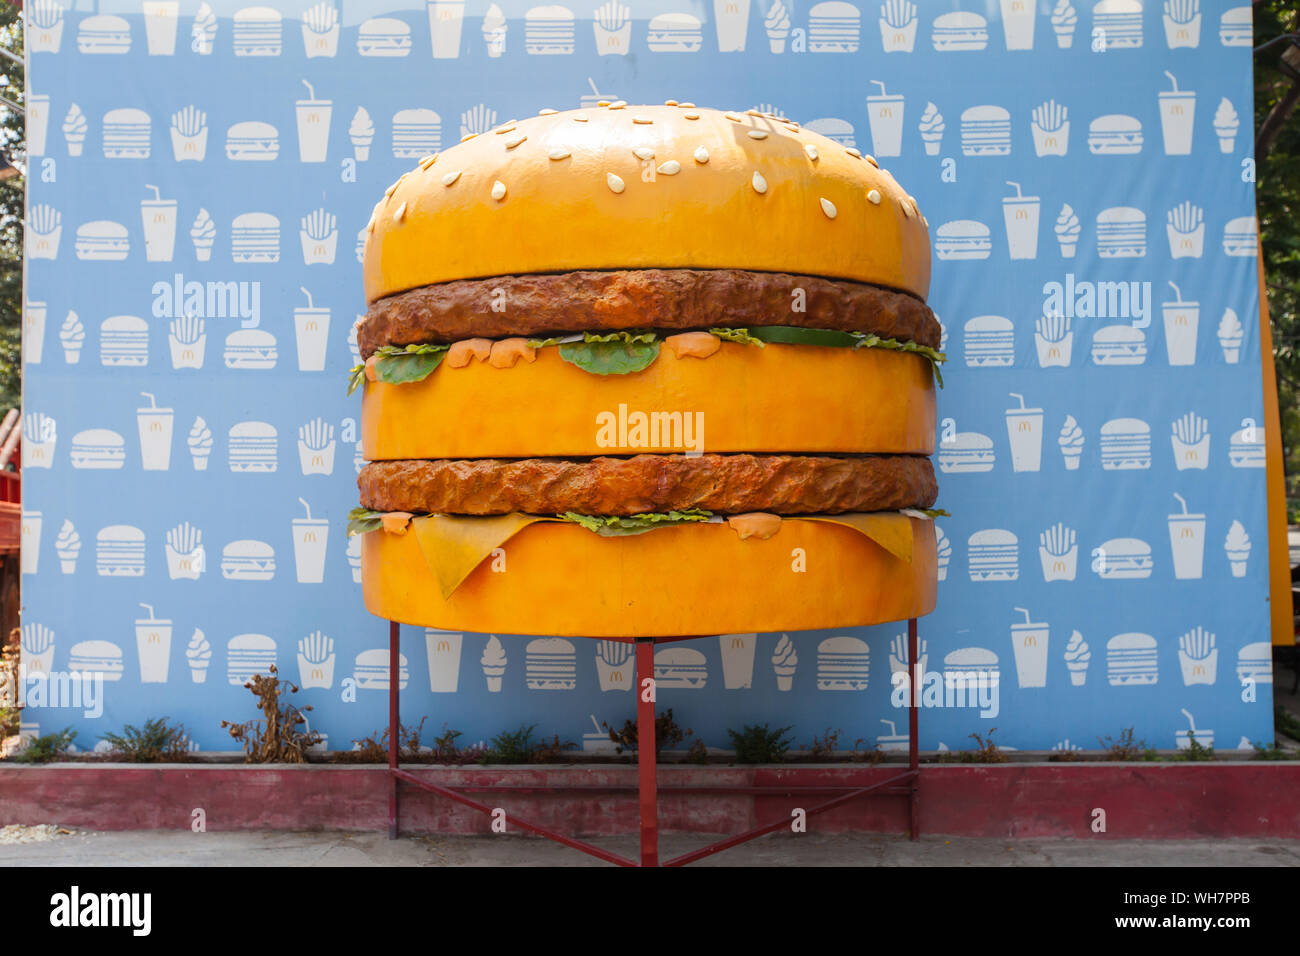 Hamburger gigante come pubblicità per l'apertura di MacDonald Soon. McDonald's Vietnam ha aperto il suo primo ristorante a ho chi Minh City nel febbraio 2014. Foto Stock